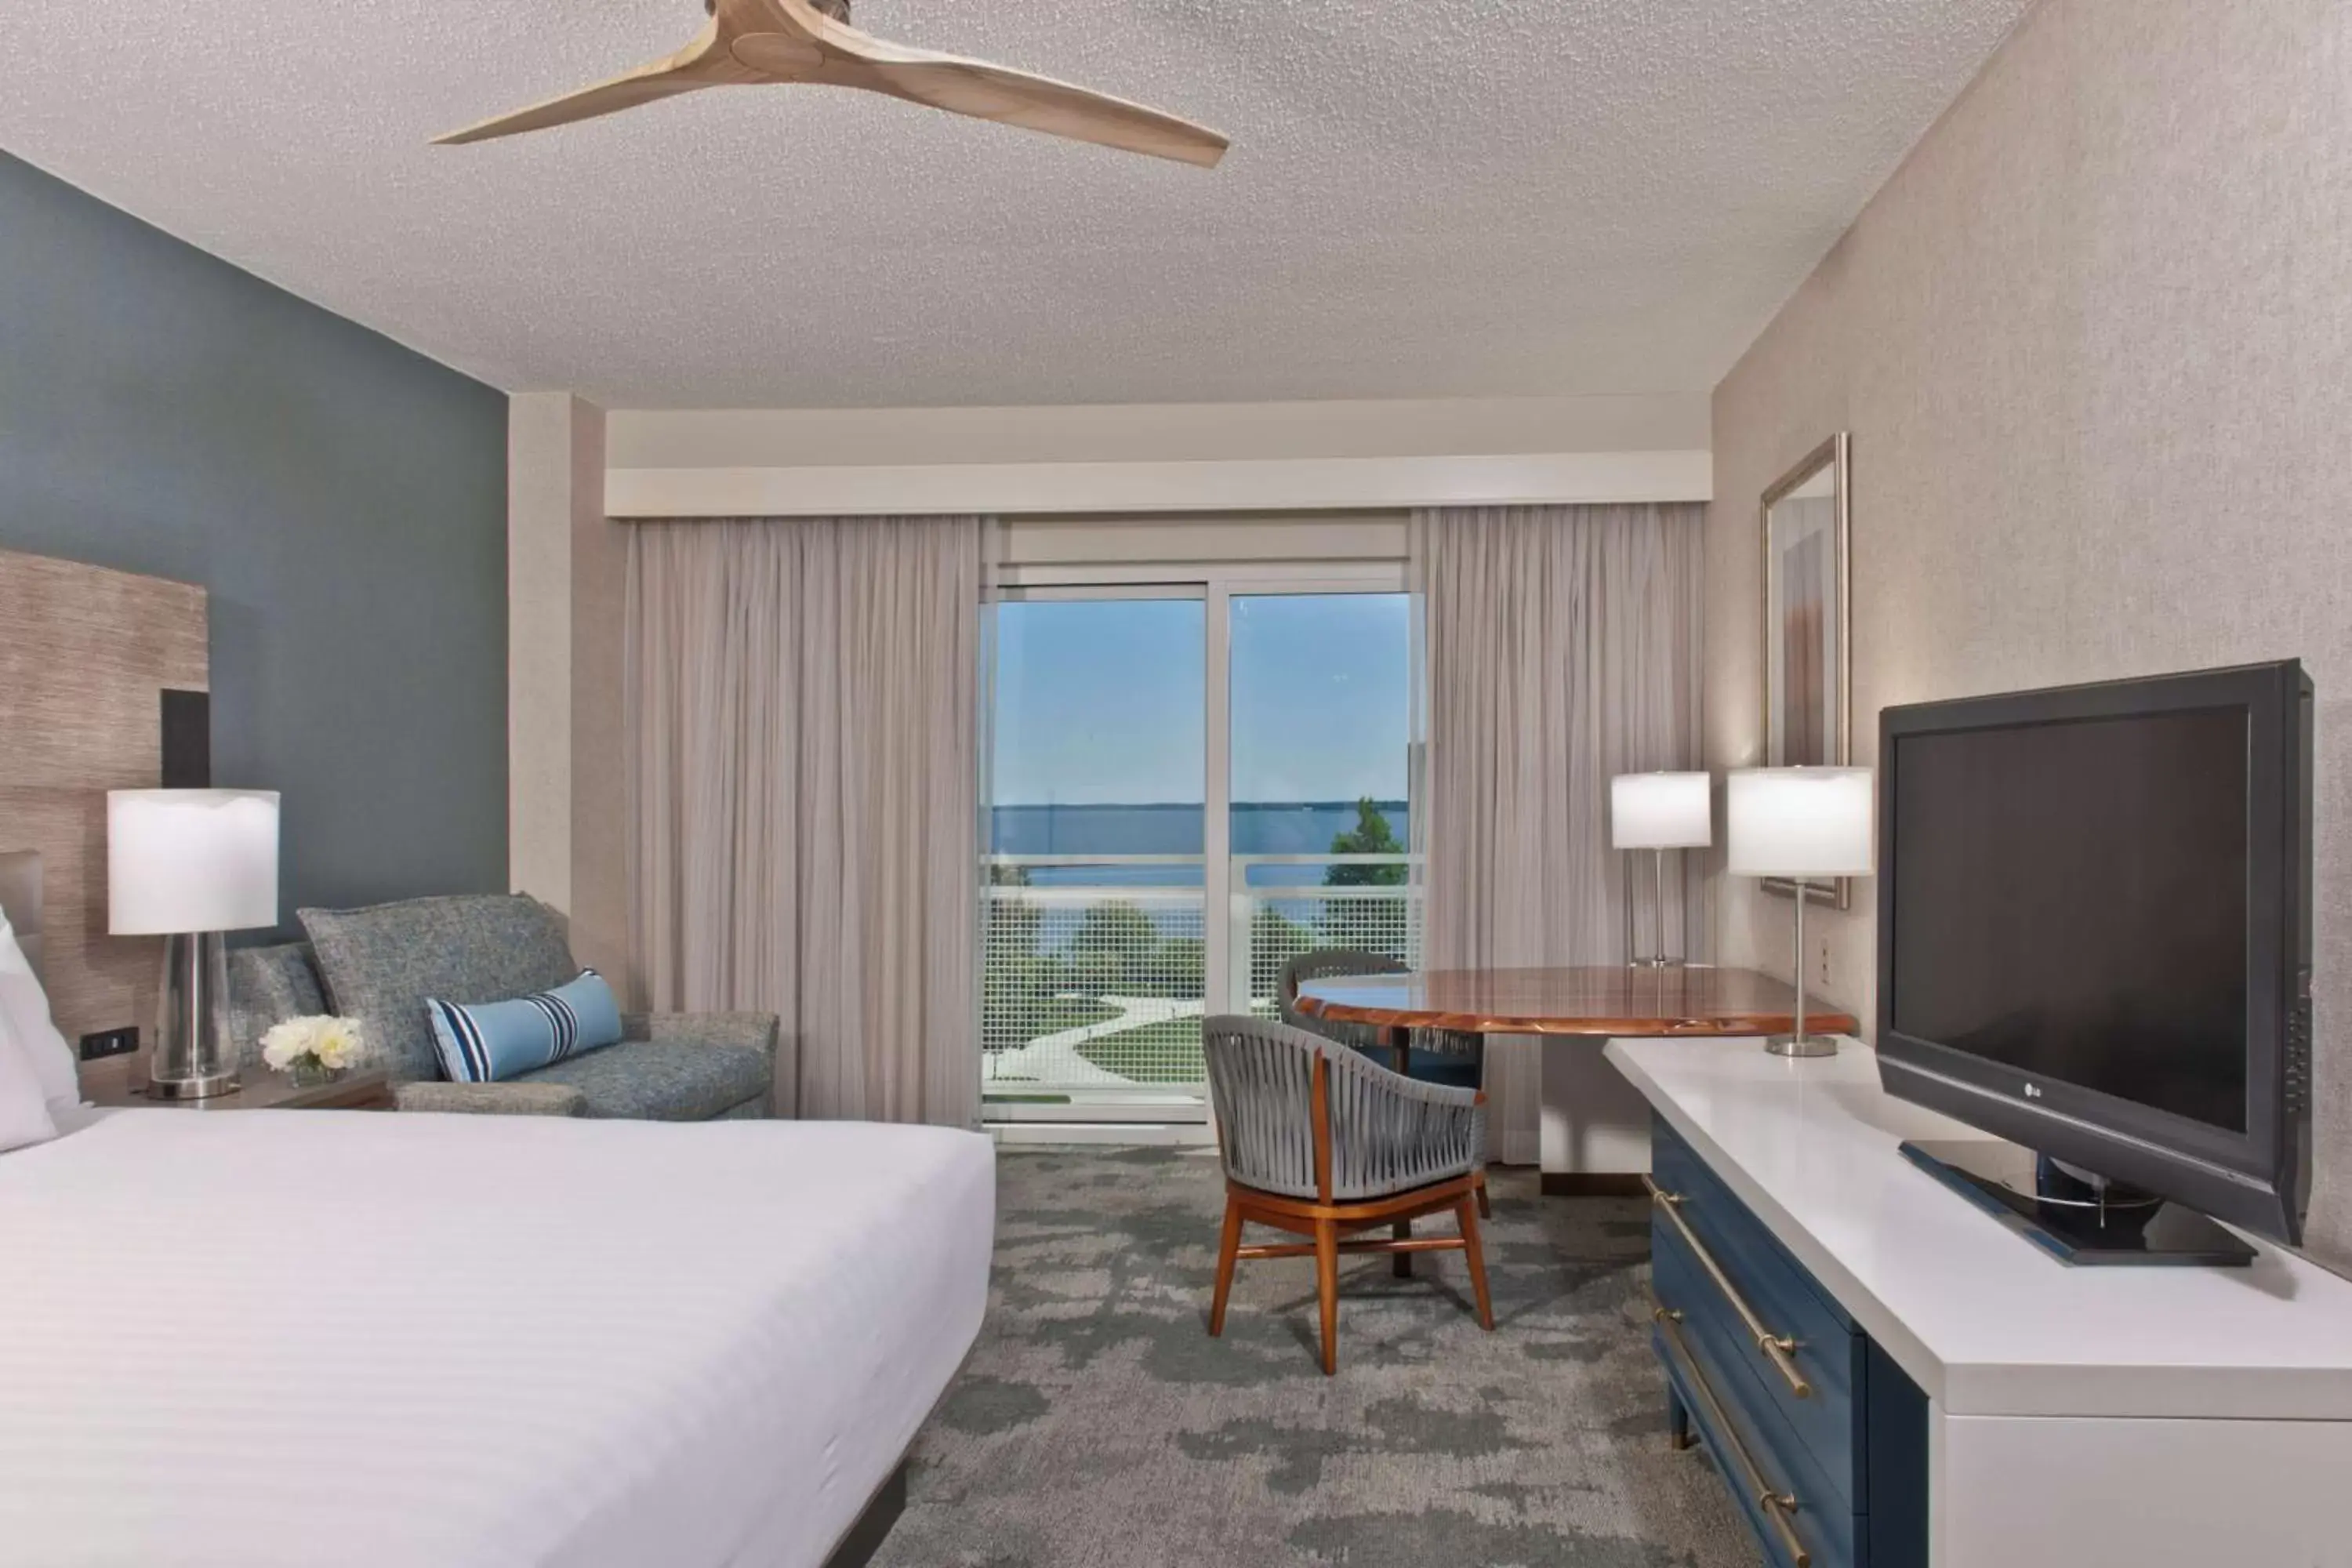 King Room with Water View in Hyatt Regency Chesapeake Bay Golf Resort, Spa & Marina